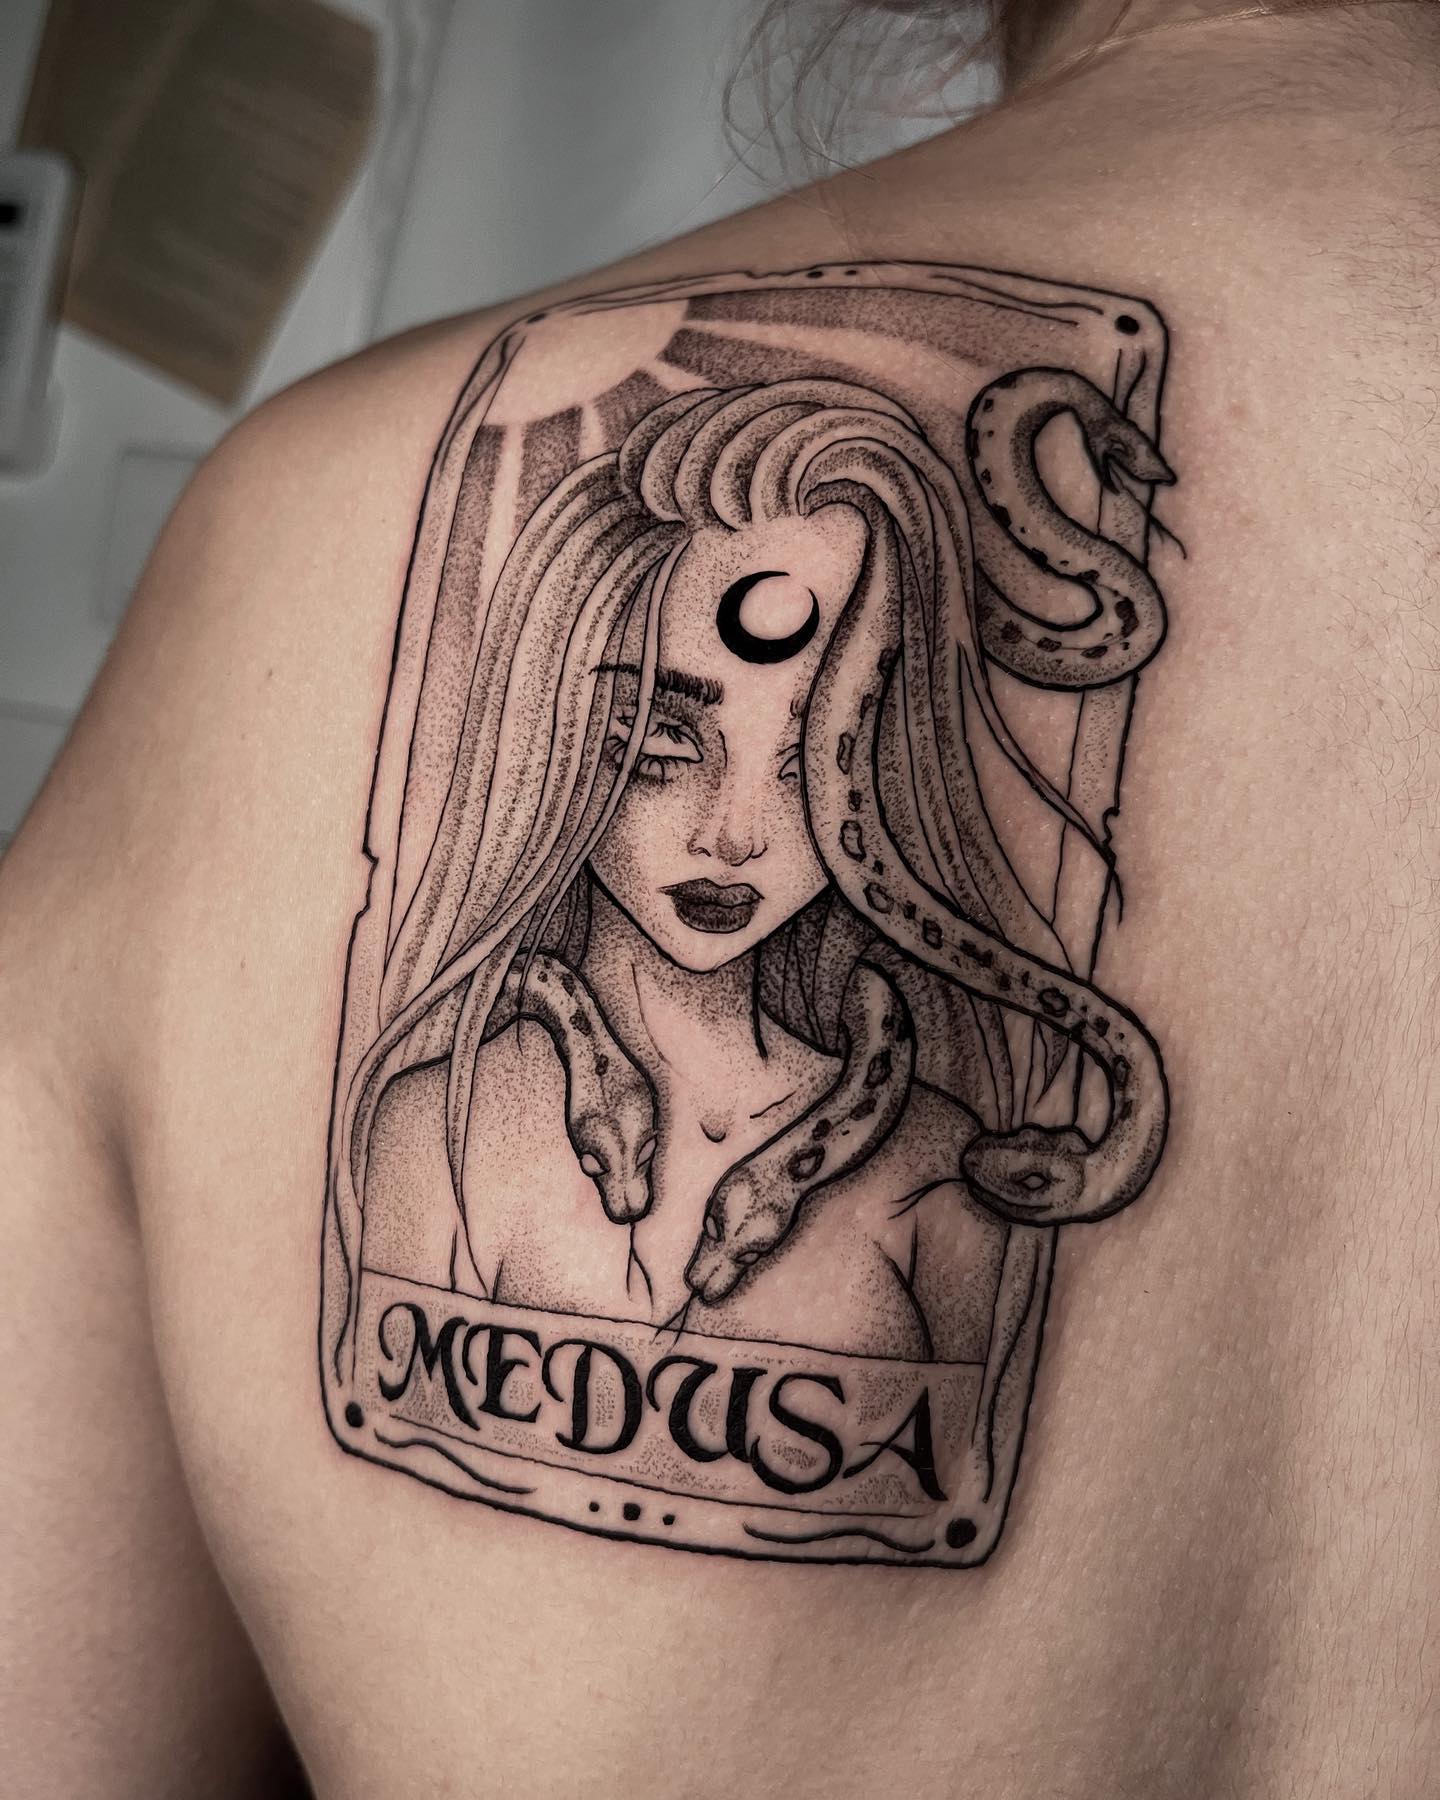 Tatuaje de Medusa enmarcado.